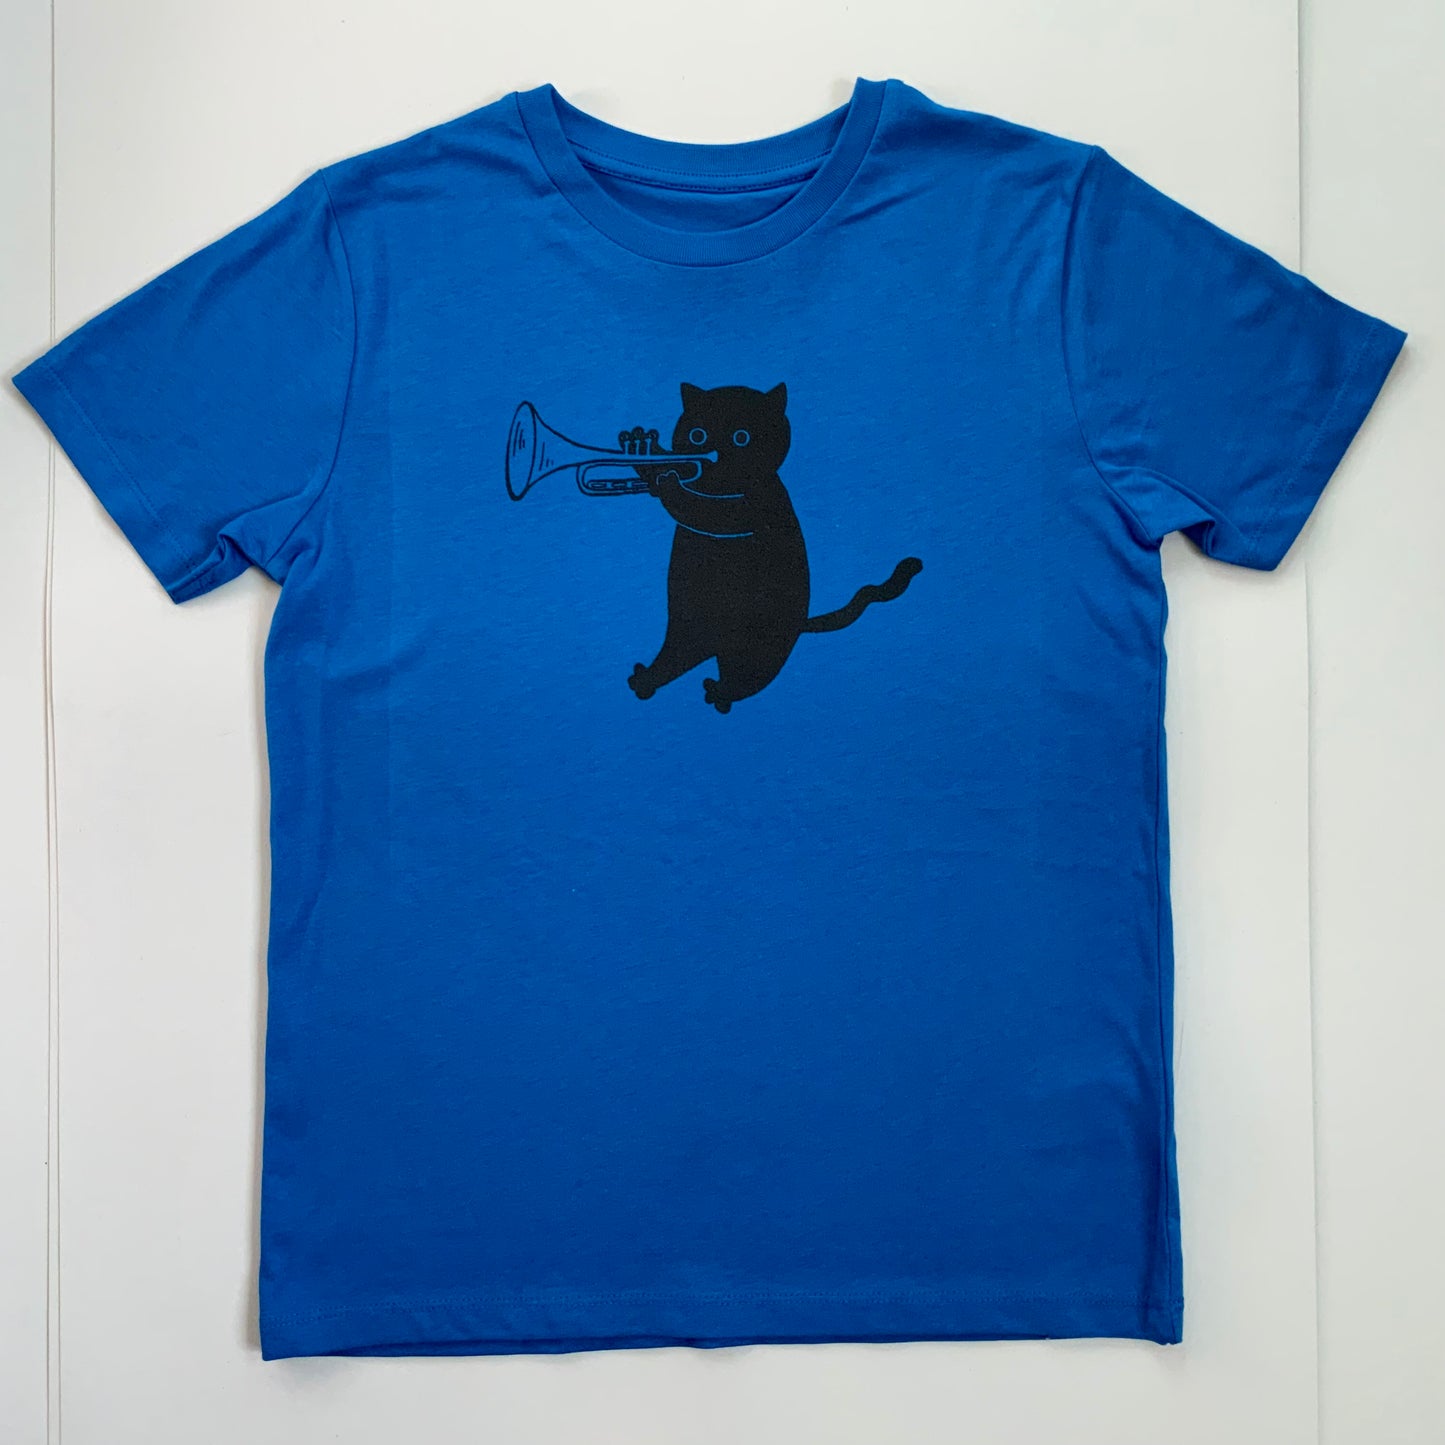 Jazz Cats kids t-shirt